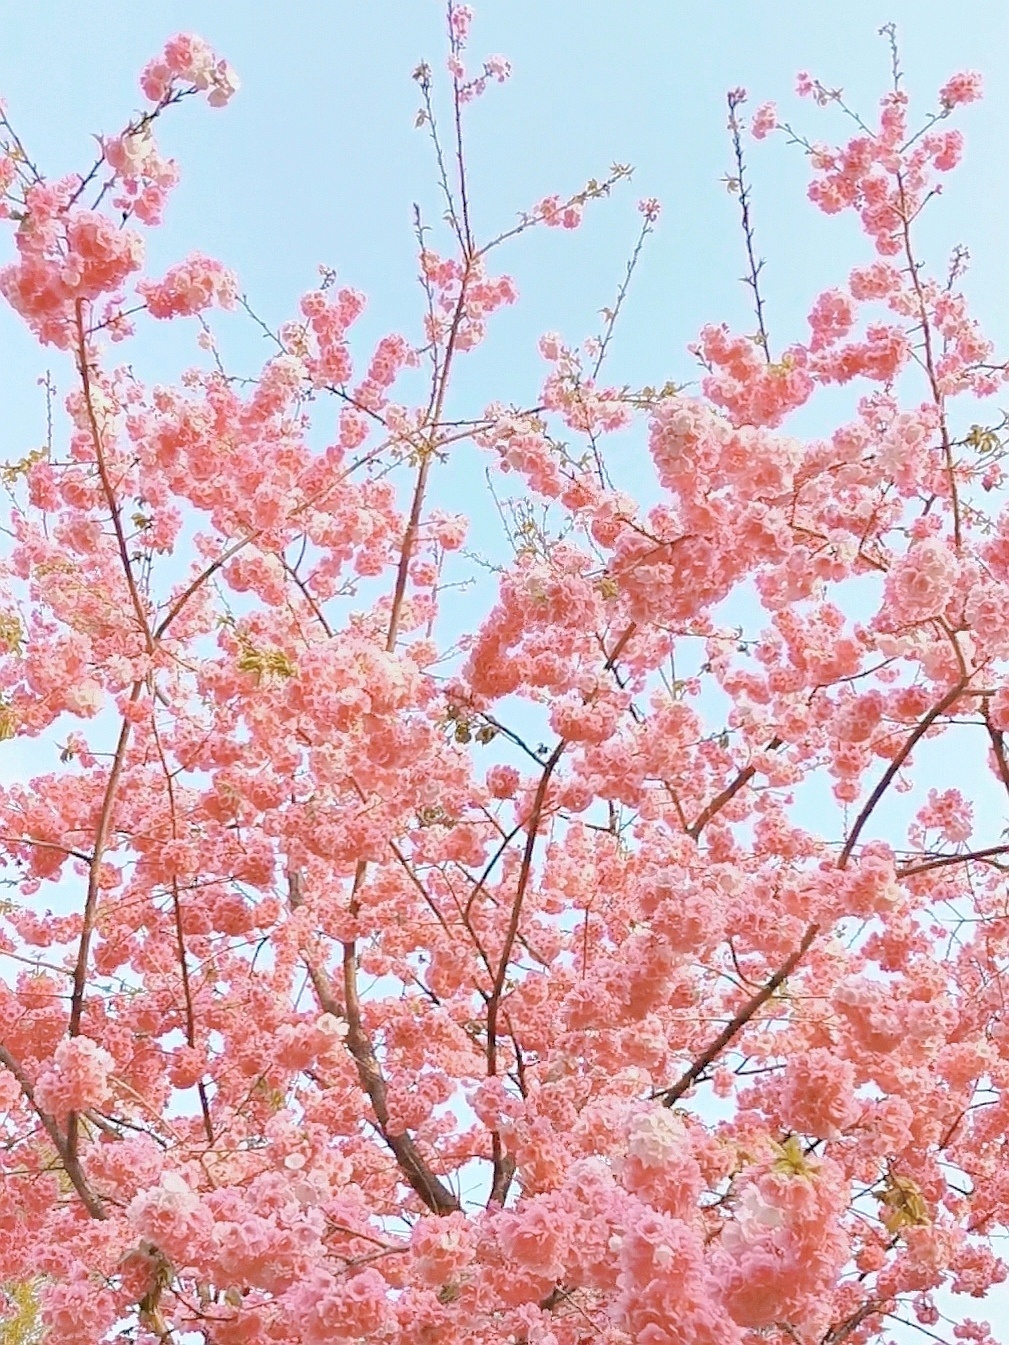 昆明看樱花最好的地方——洛龙公园樱花大道看樱花